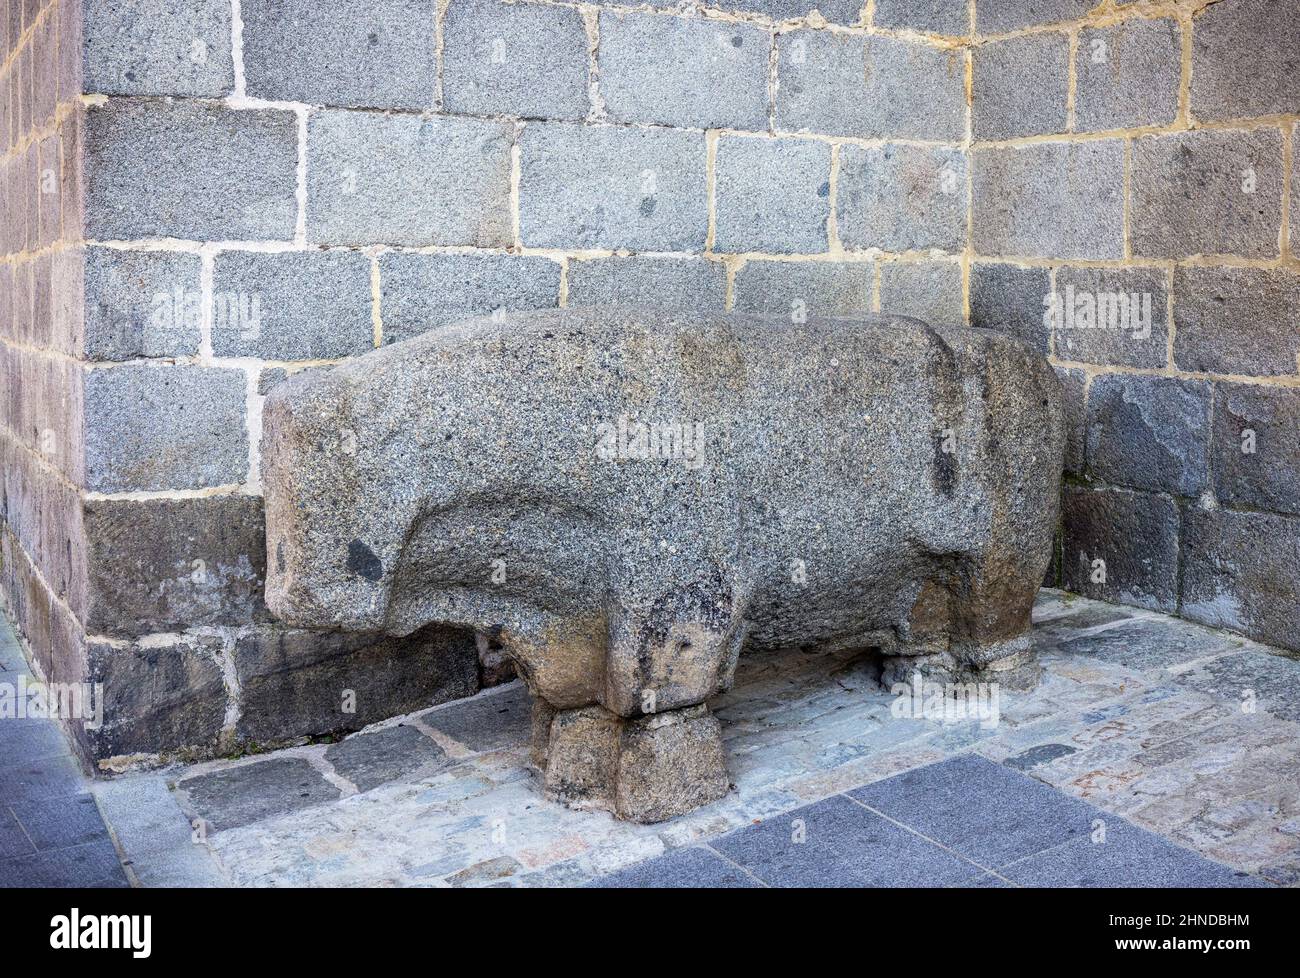 Ein steinerner Bulle, der als Verraco bekannt ist. Viele Verrakos wurden in Zentralspanien gefunden und sind noch erhalten. Sie stammen aus der Zeit um den 4th. Bis zum 1st. Jahrhundert Stockfoto